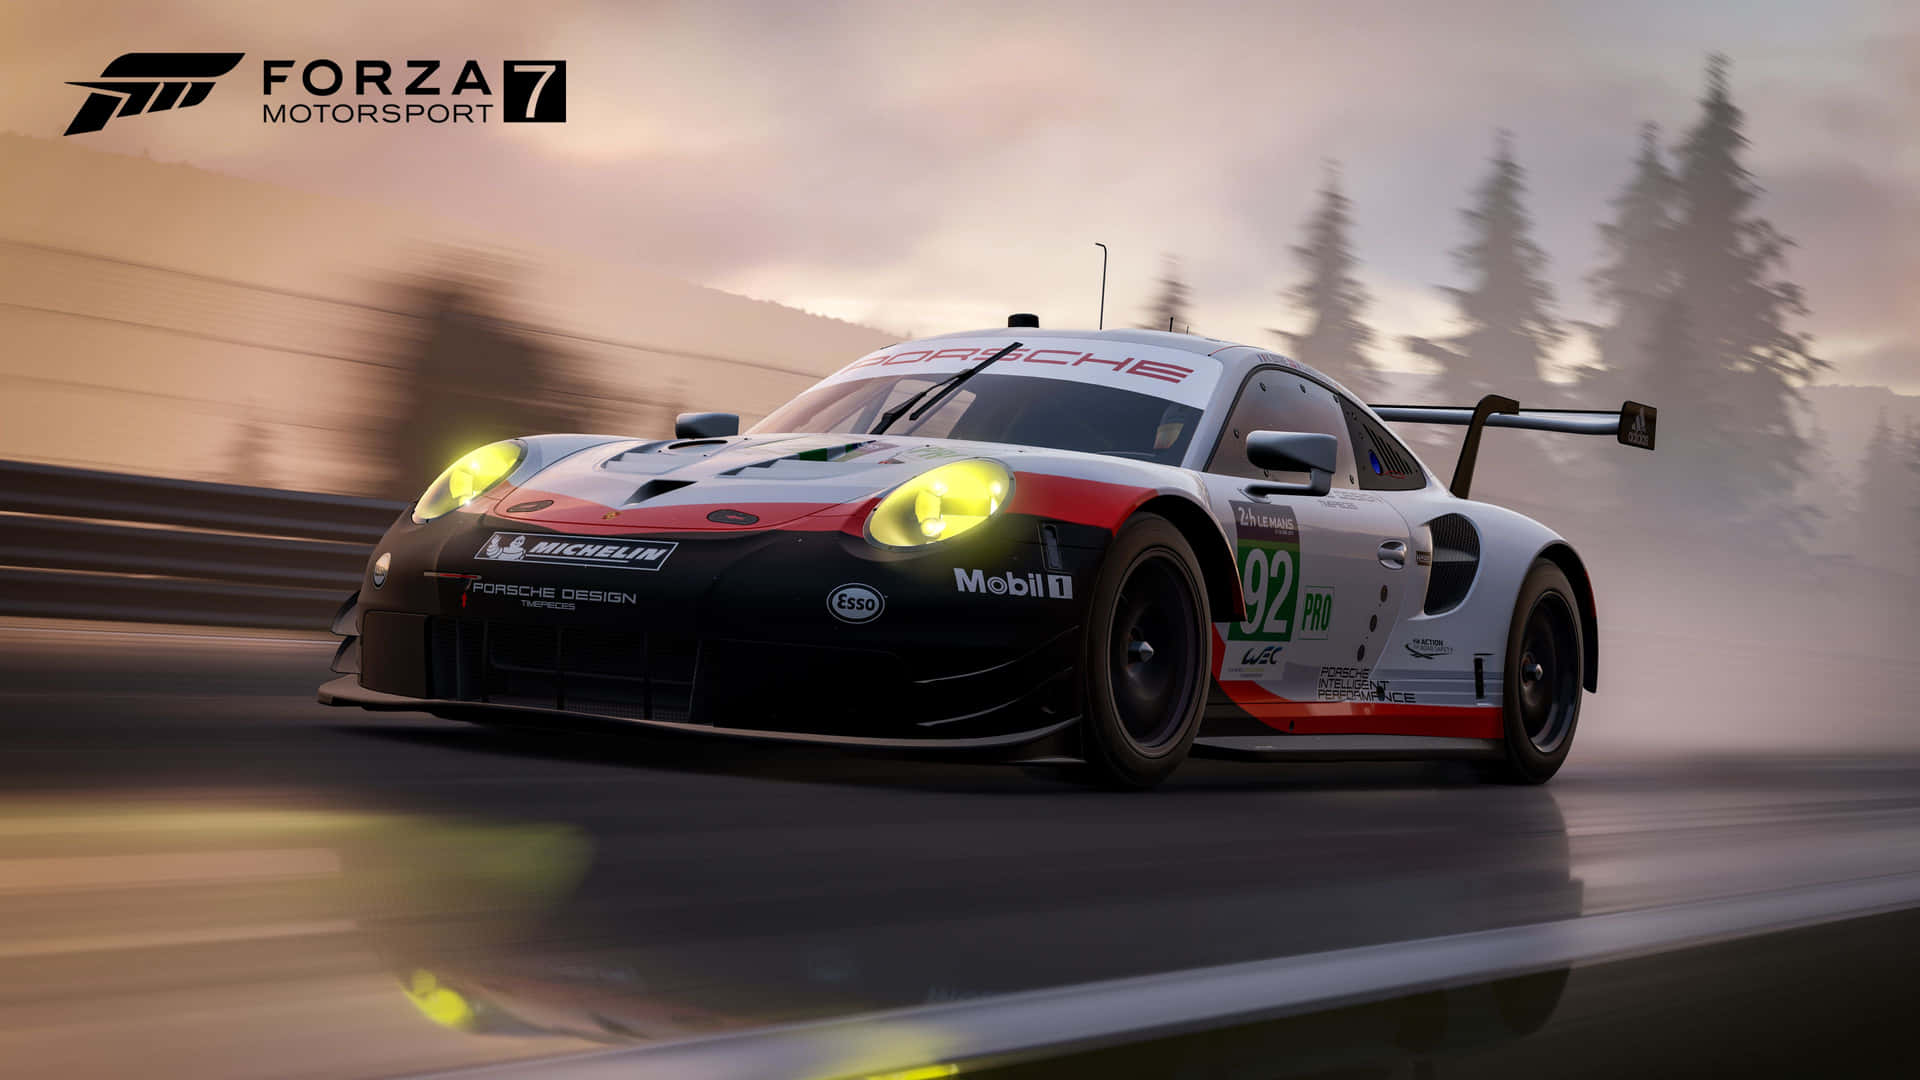 Forza7 - Porsche Gt3 Rs Wallpaper